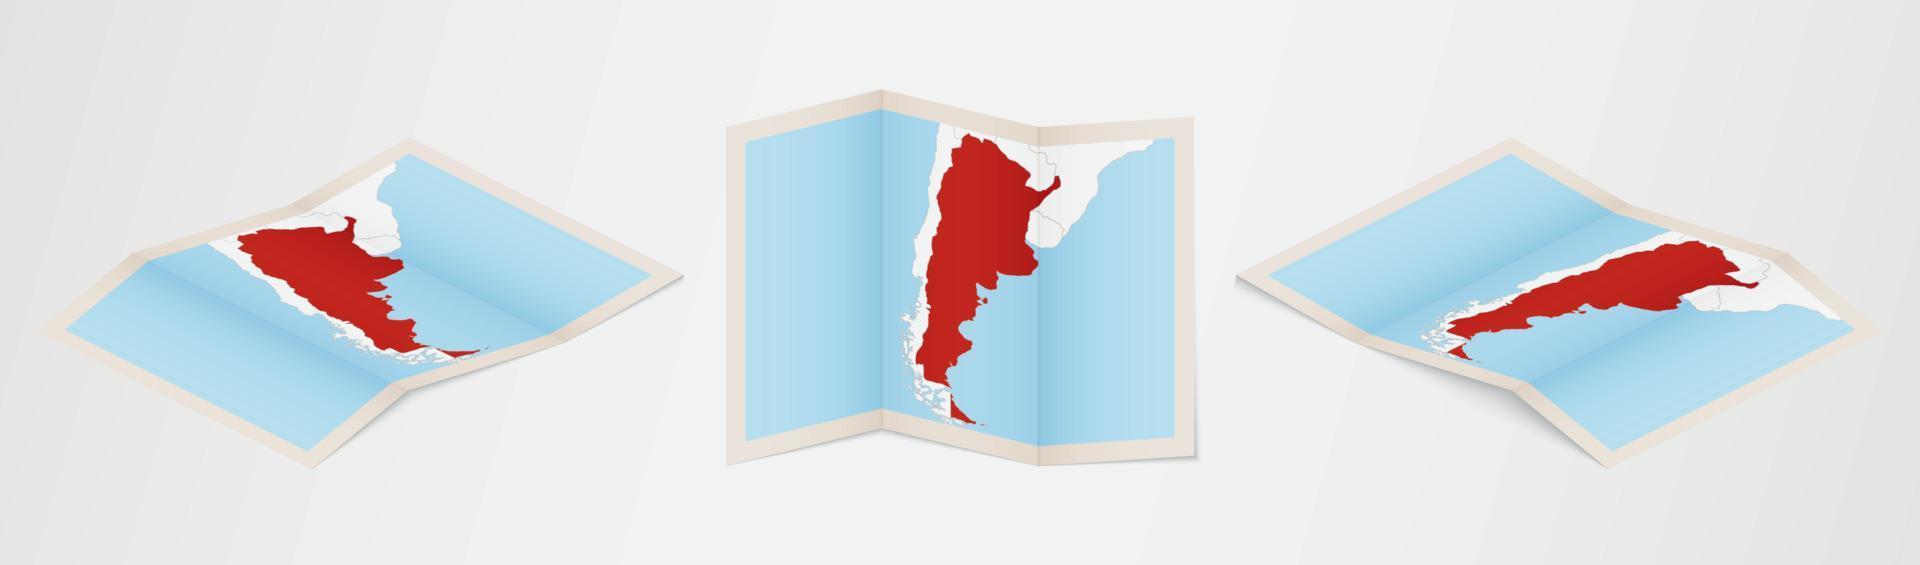 mapa dobrado da argentina em três versões diferentes. vetor